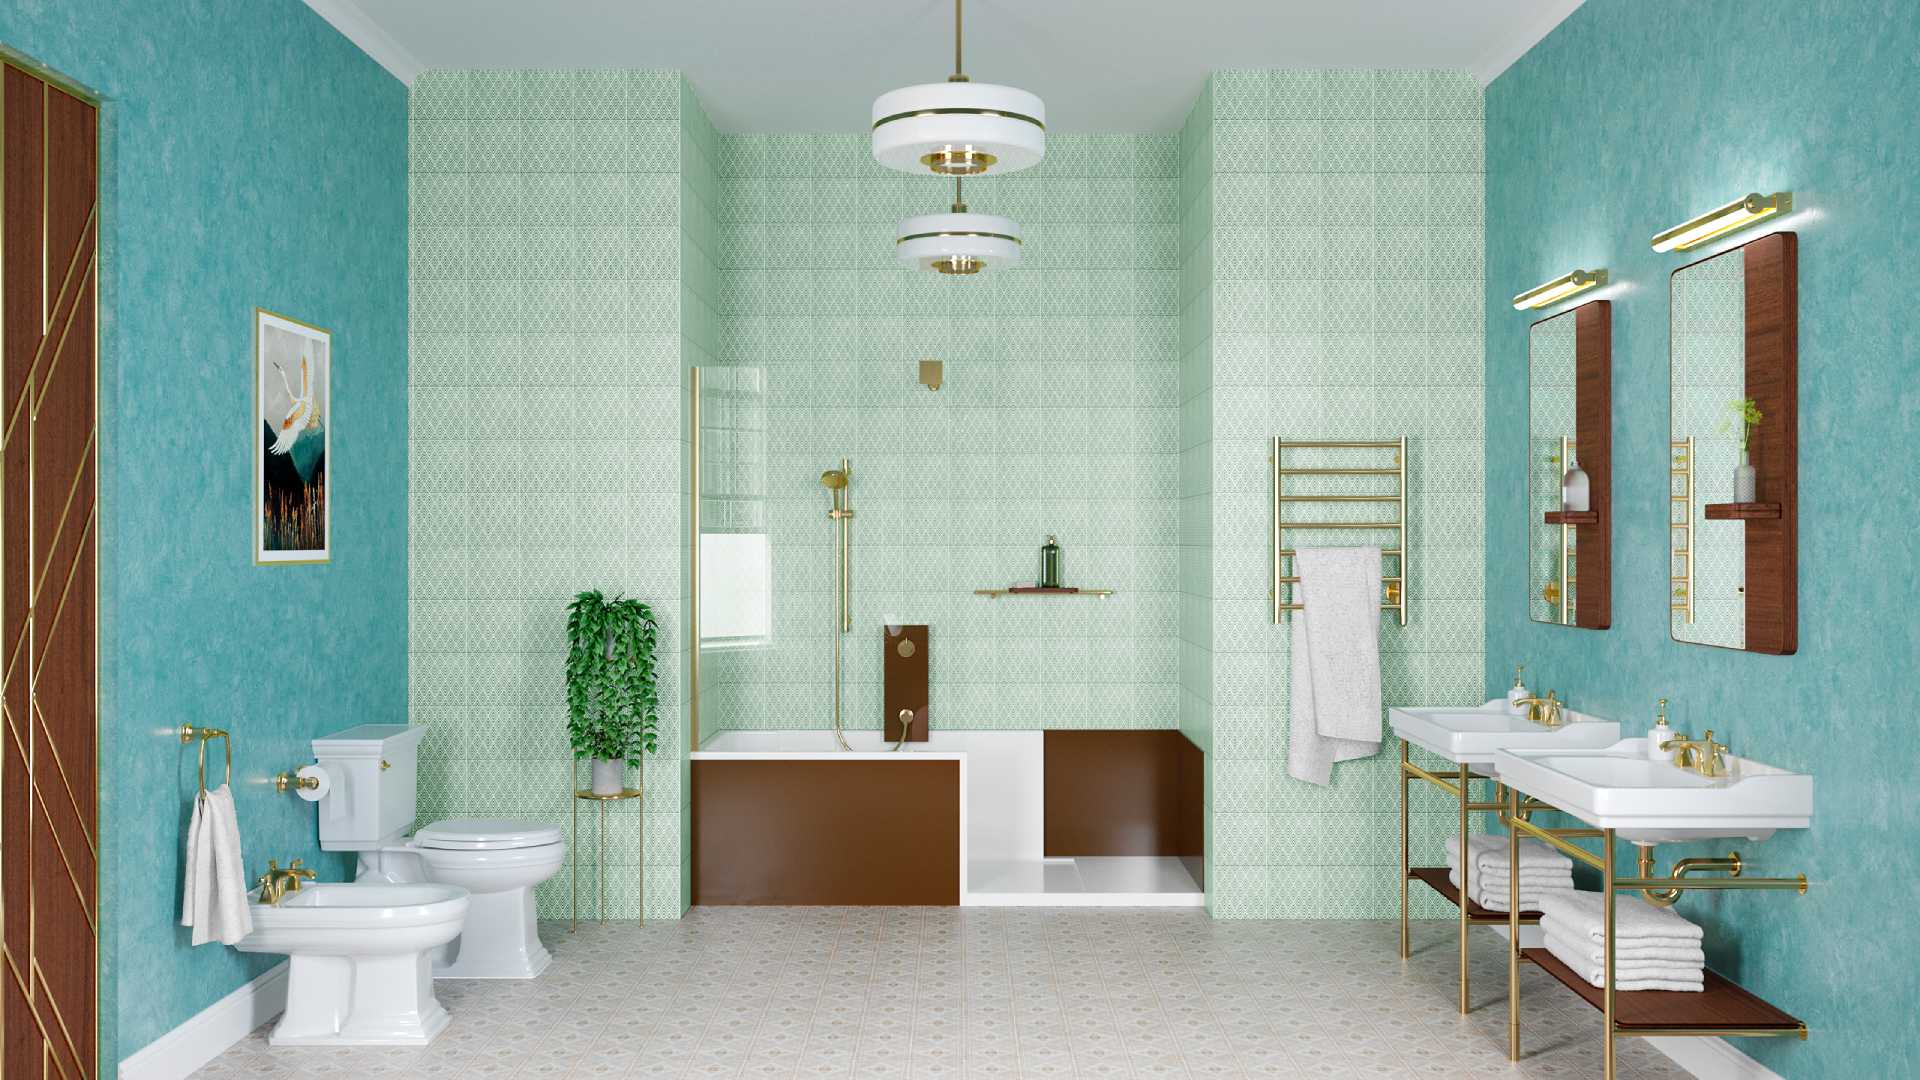 Une douche à l'italienne dans une salle de bain de style art déco